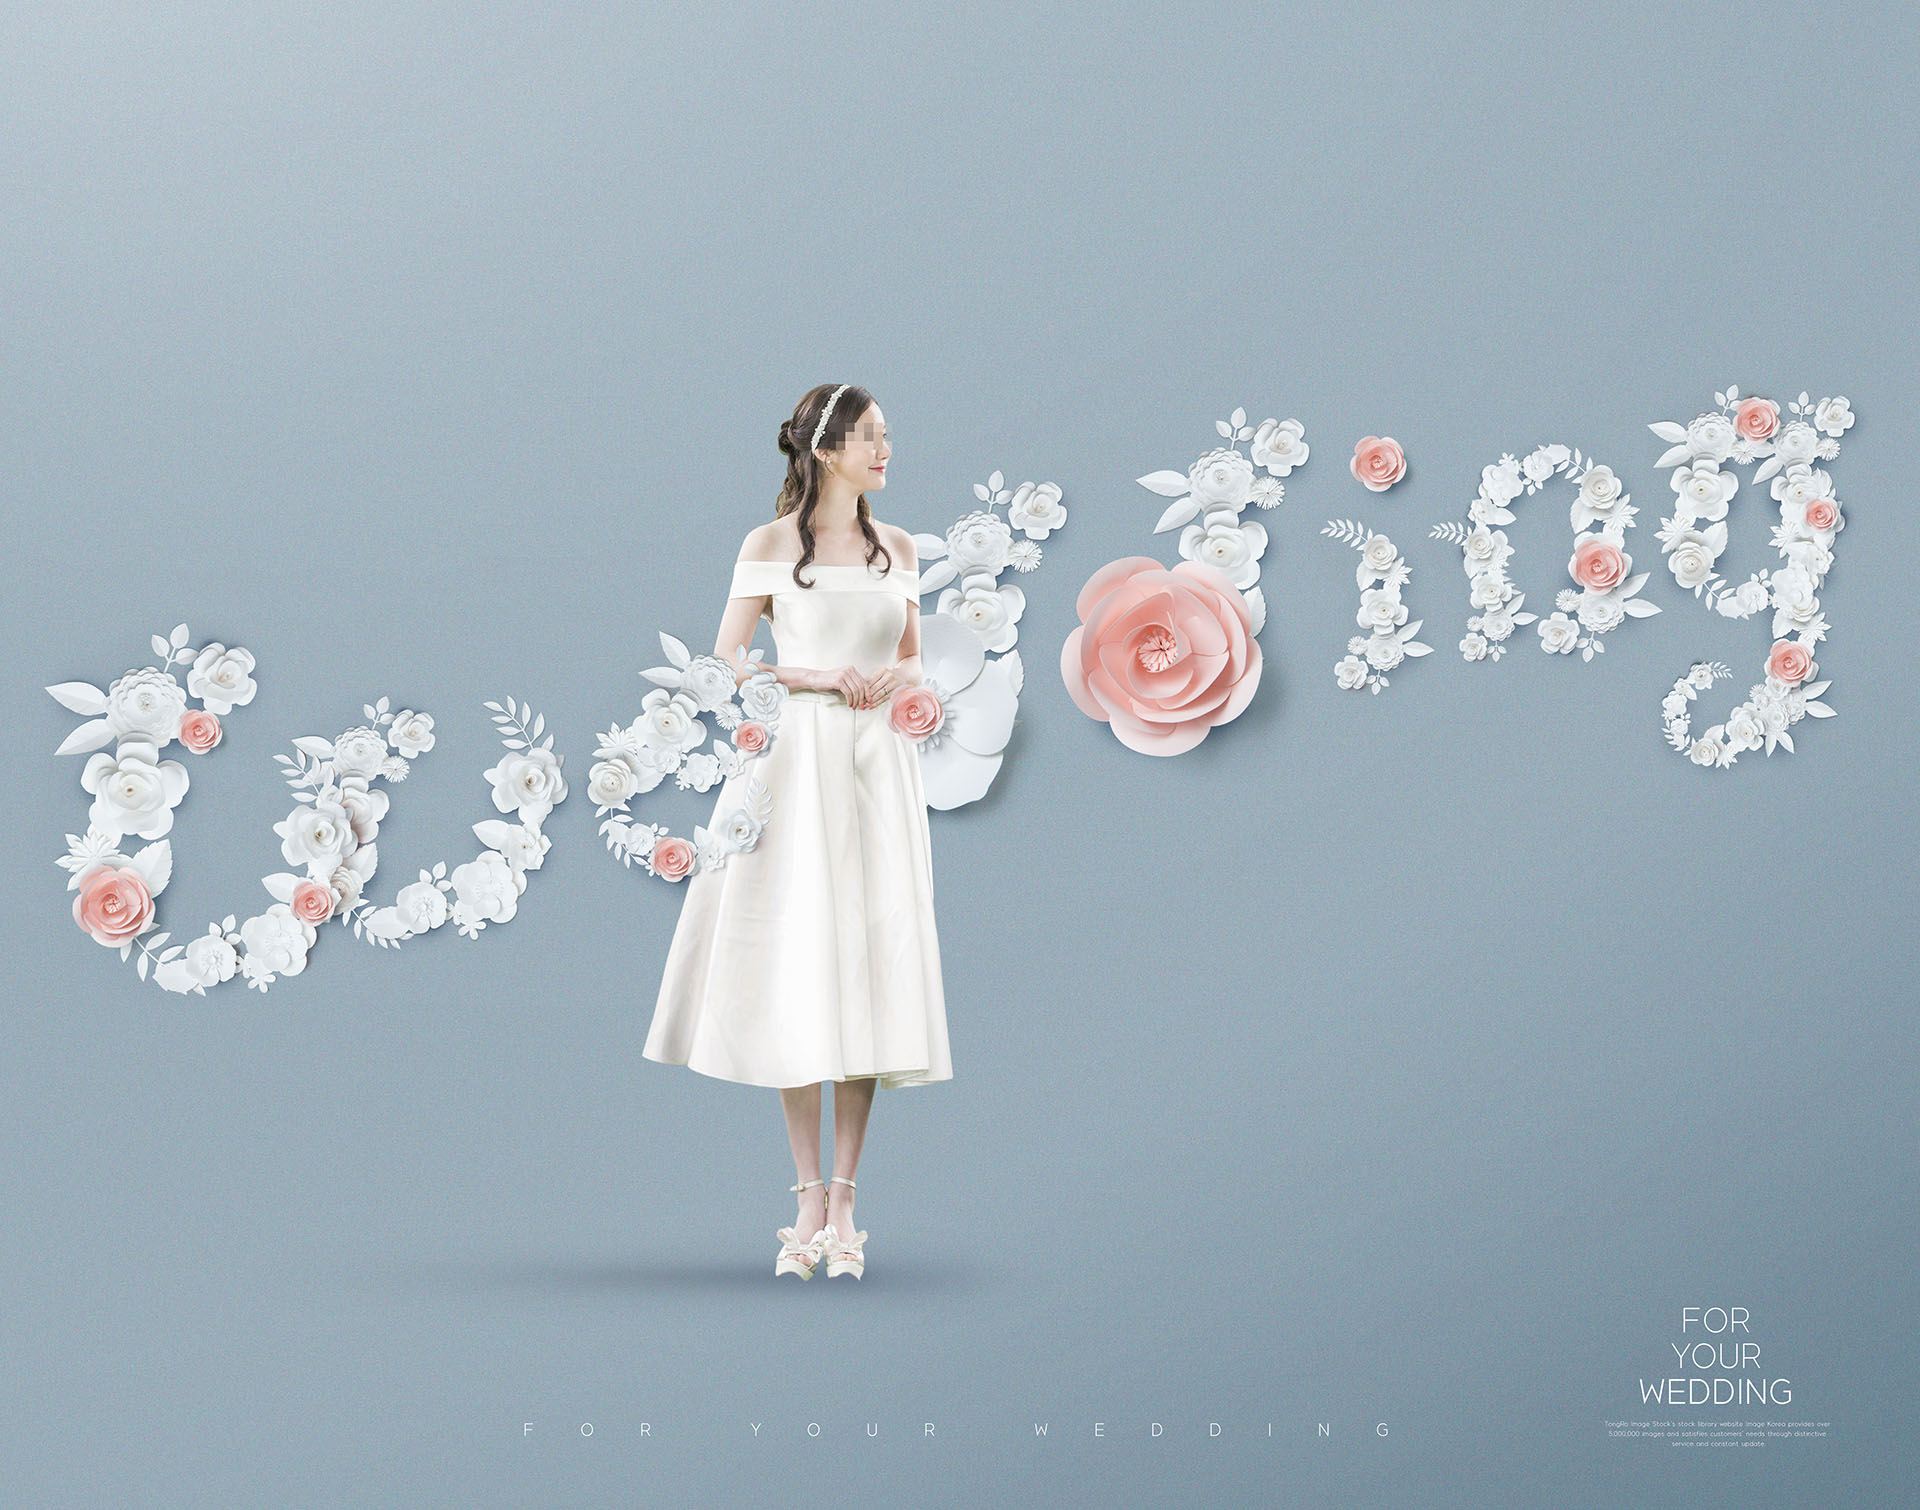 婚礼花卉创意场景海报PSD素材模板下载插图(7)